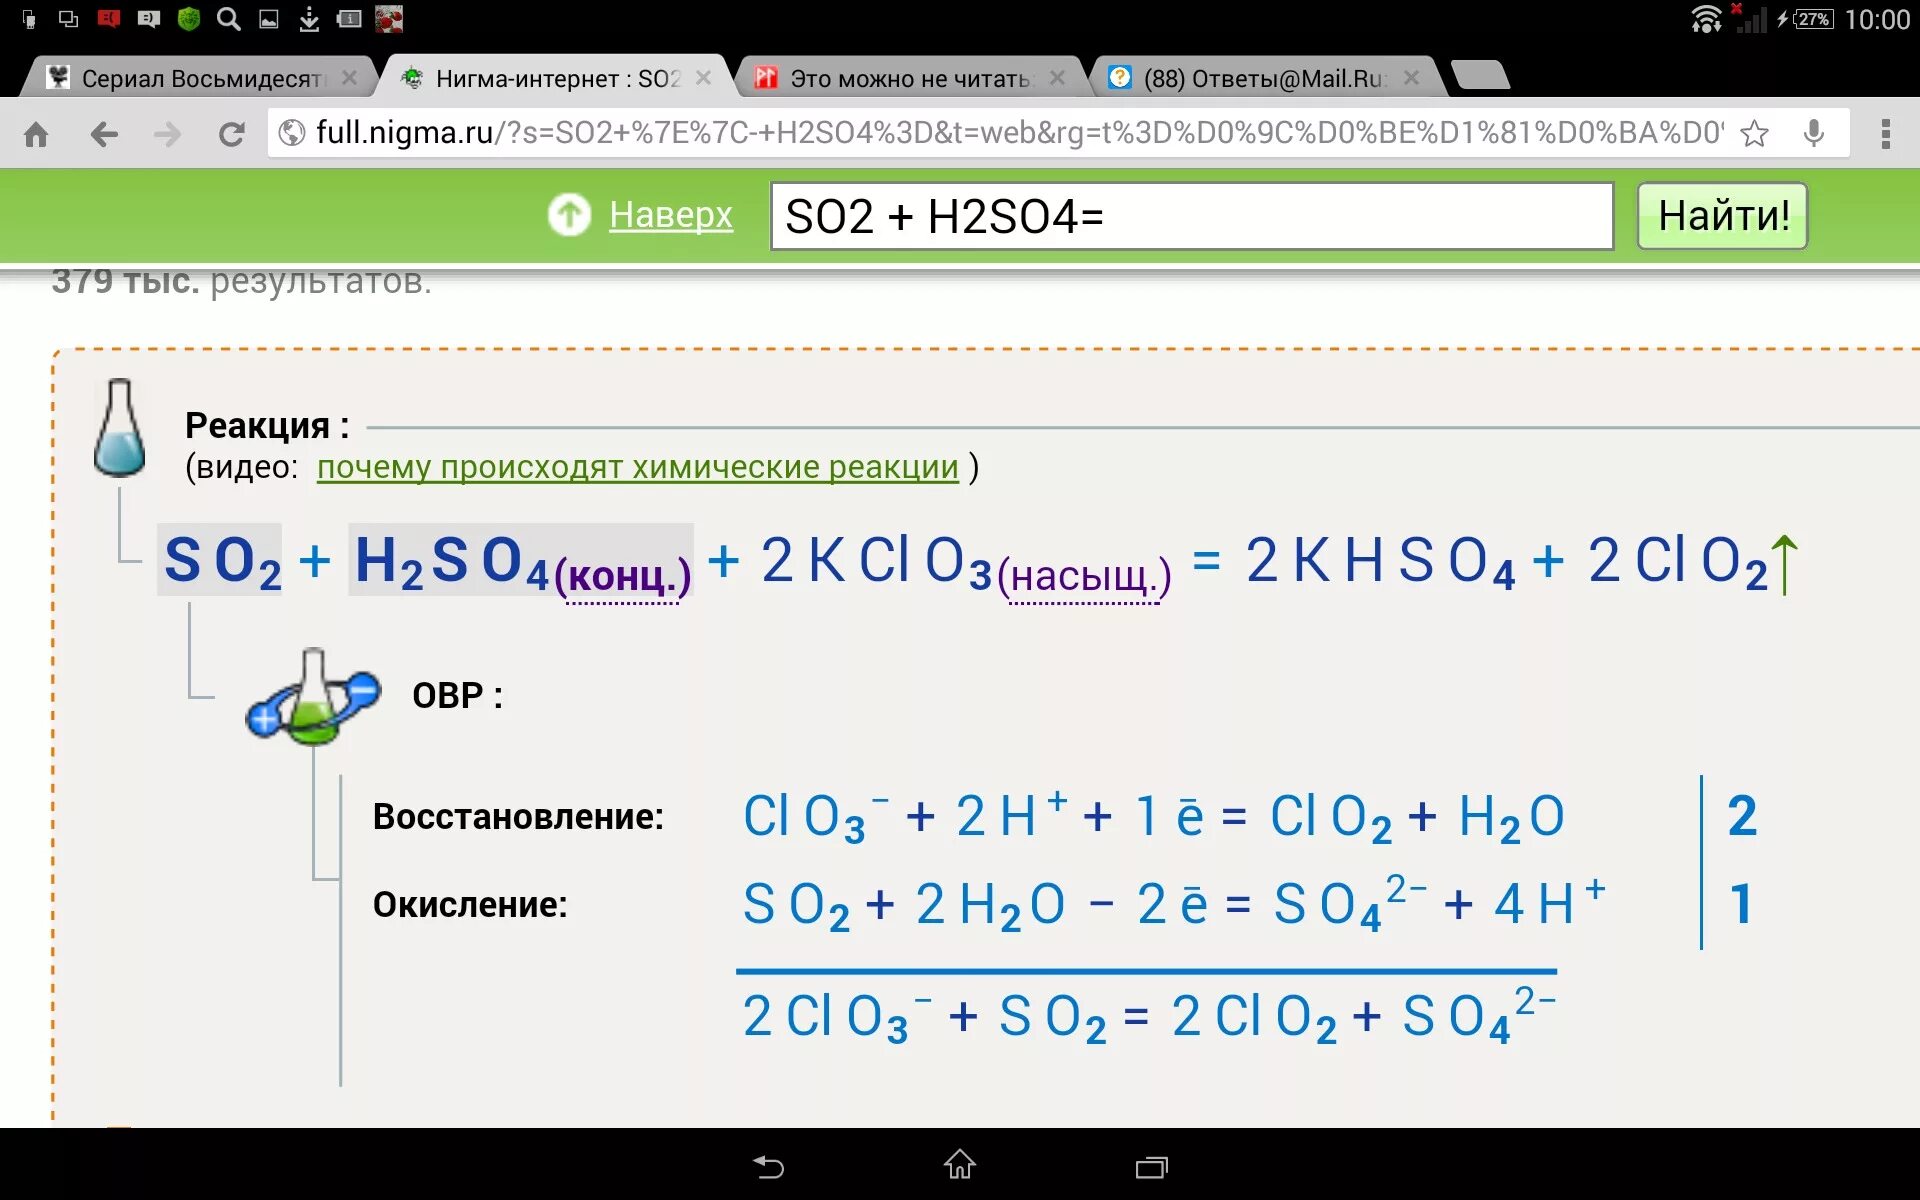 Fe2so43 hi. So2 h2so4. S+h2so4. S=h2so4=so2+h2). So2 h2so4 конц.